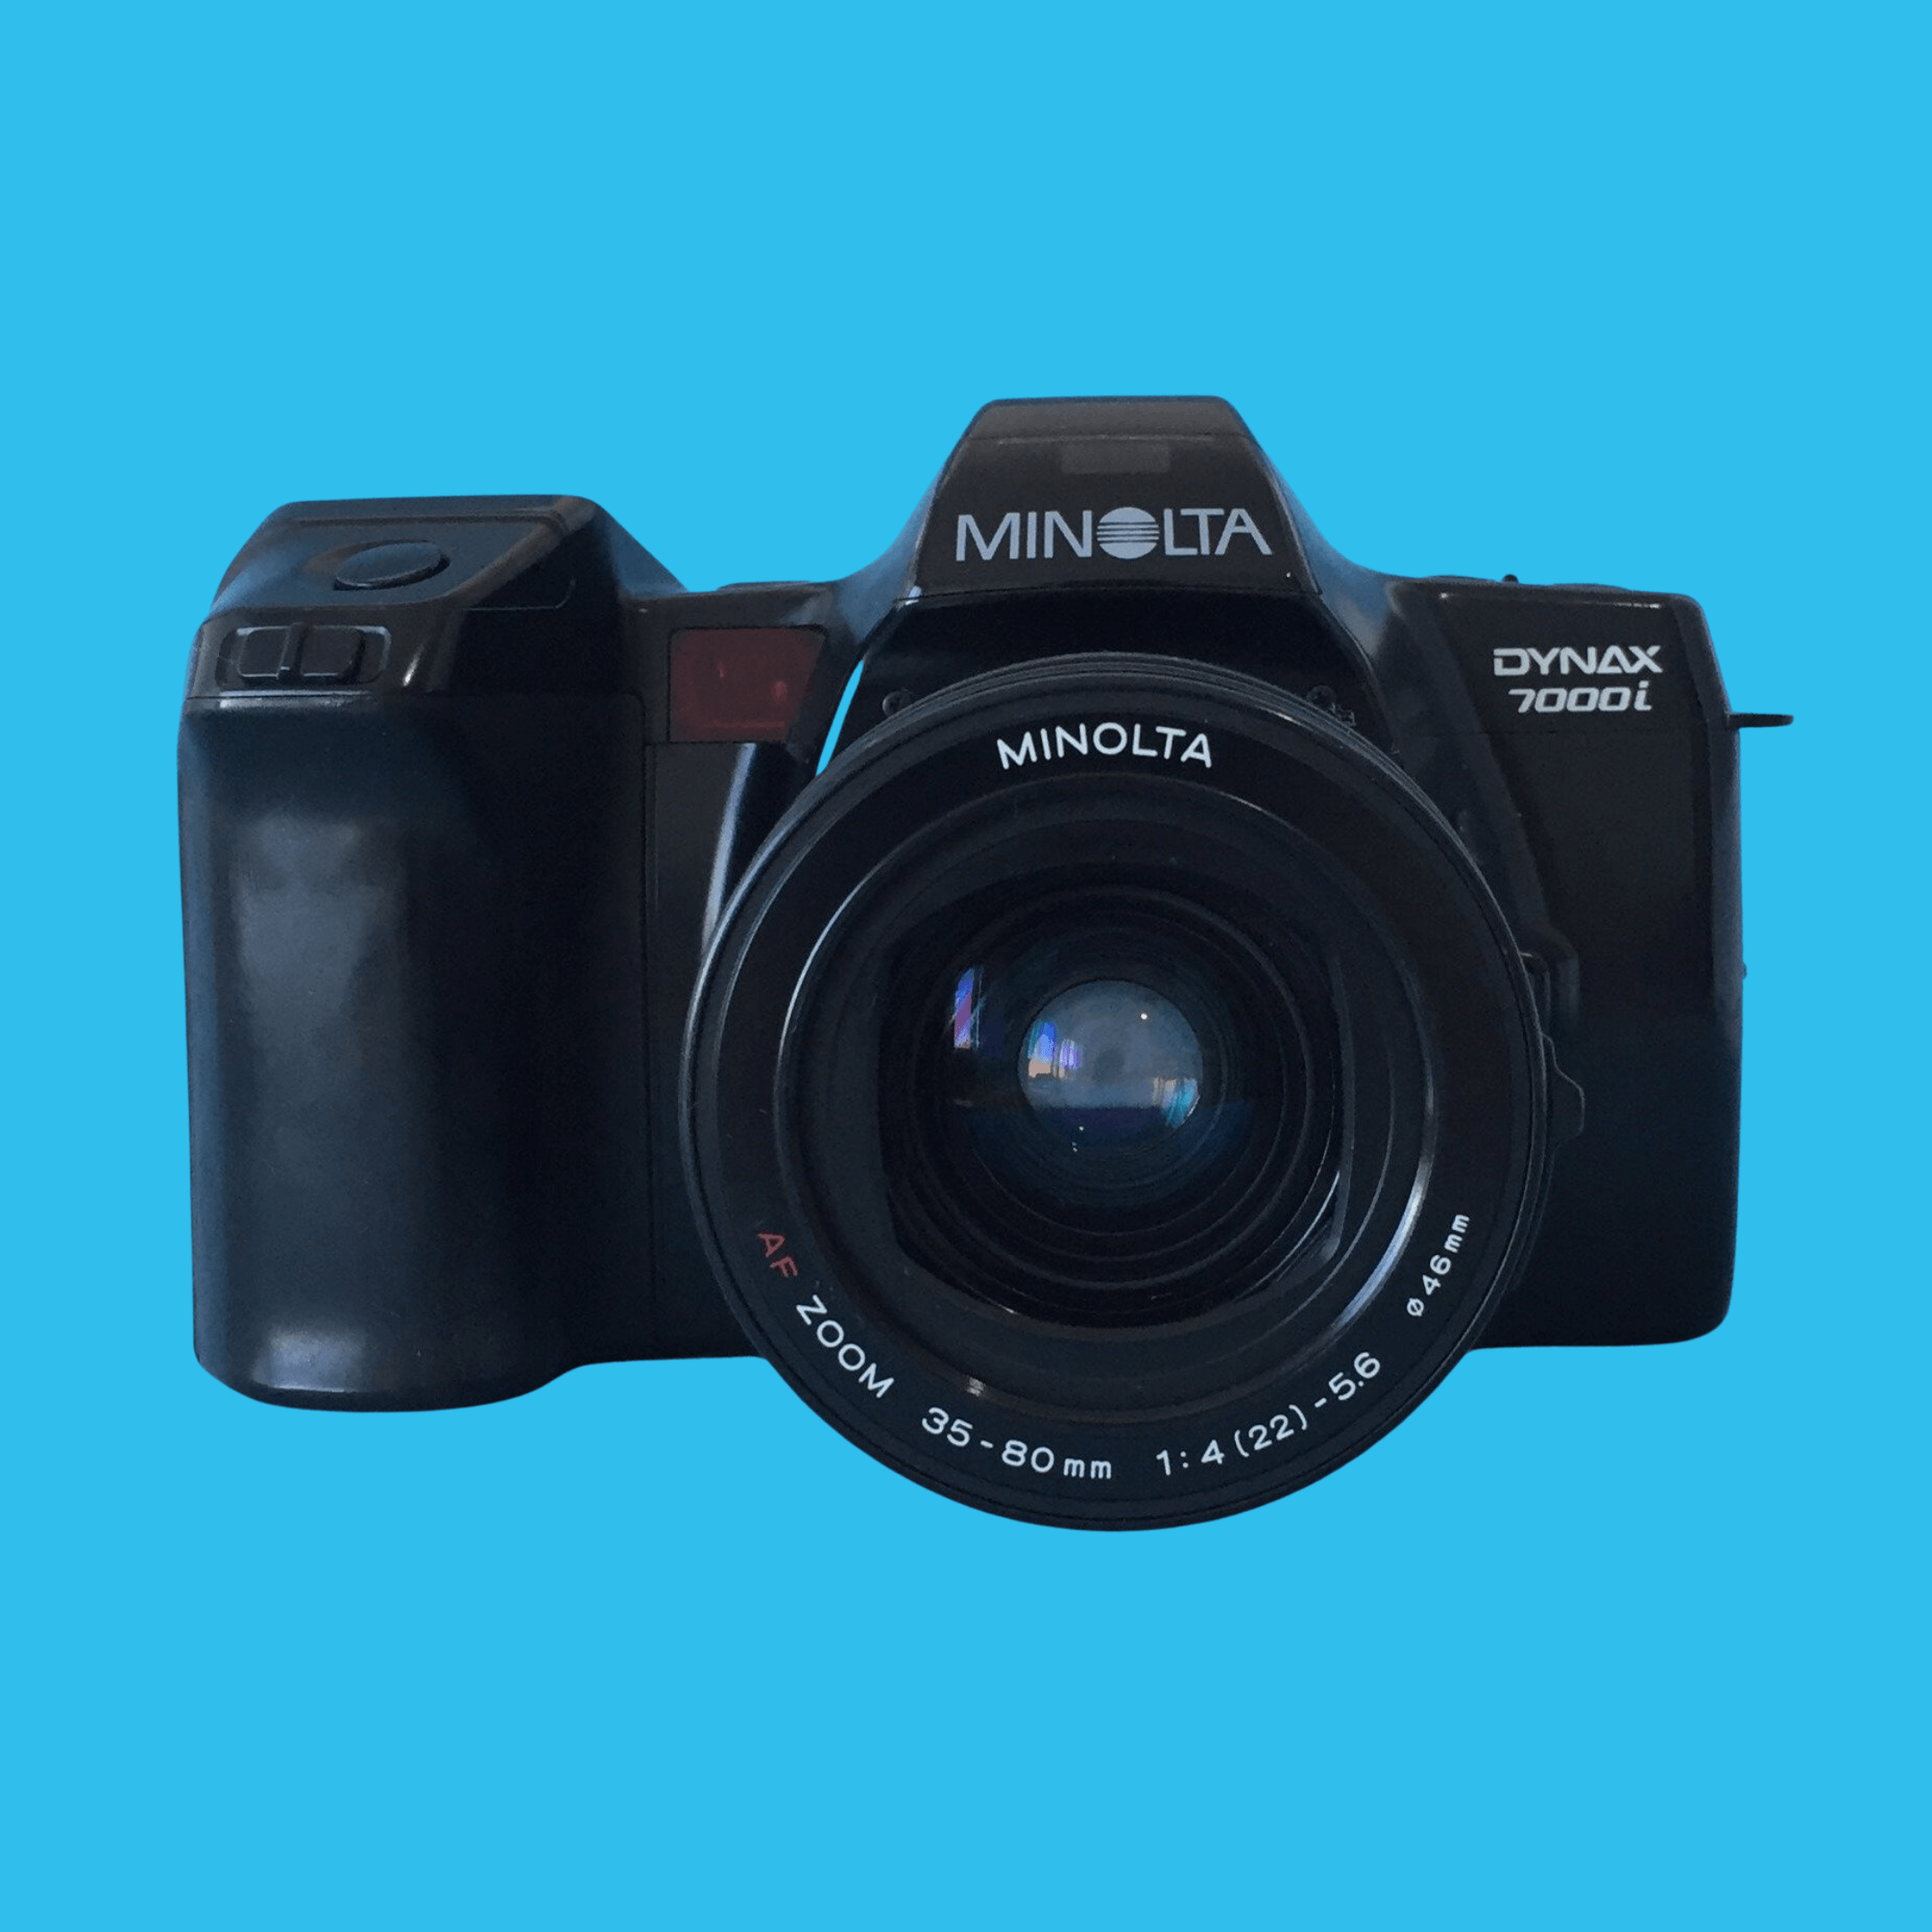 ミノルタ Maxxum 7000i 自動一眼レフ 35 mm フィルム カメラ ミノルタ AF 35 mm-105 mm ズーム レンズ付き